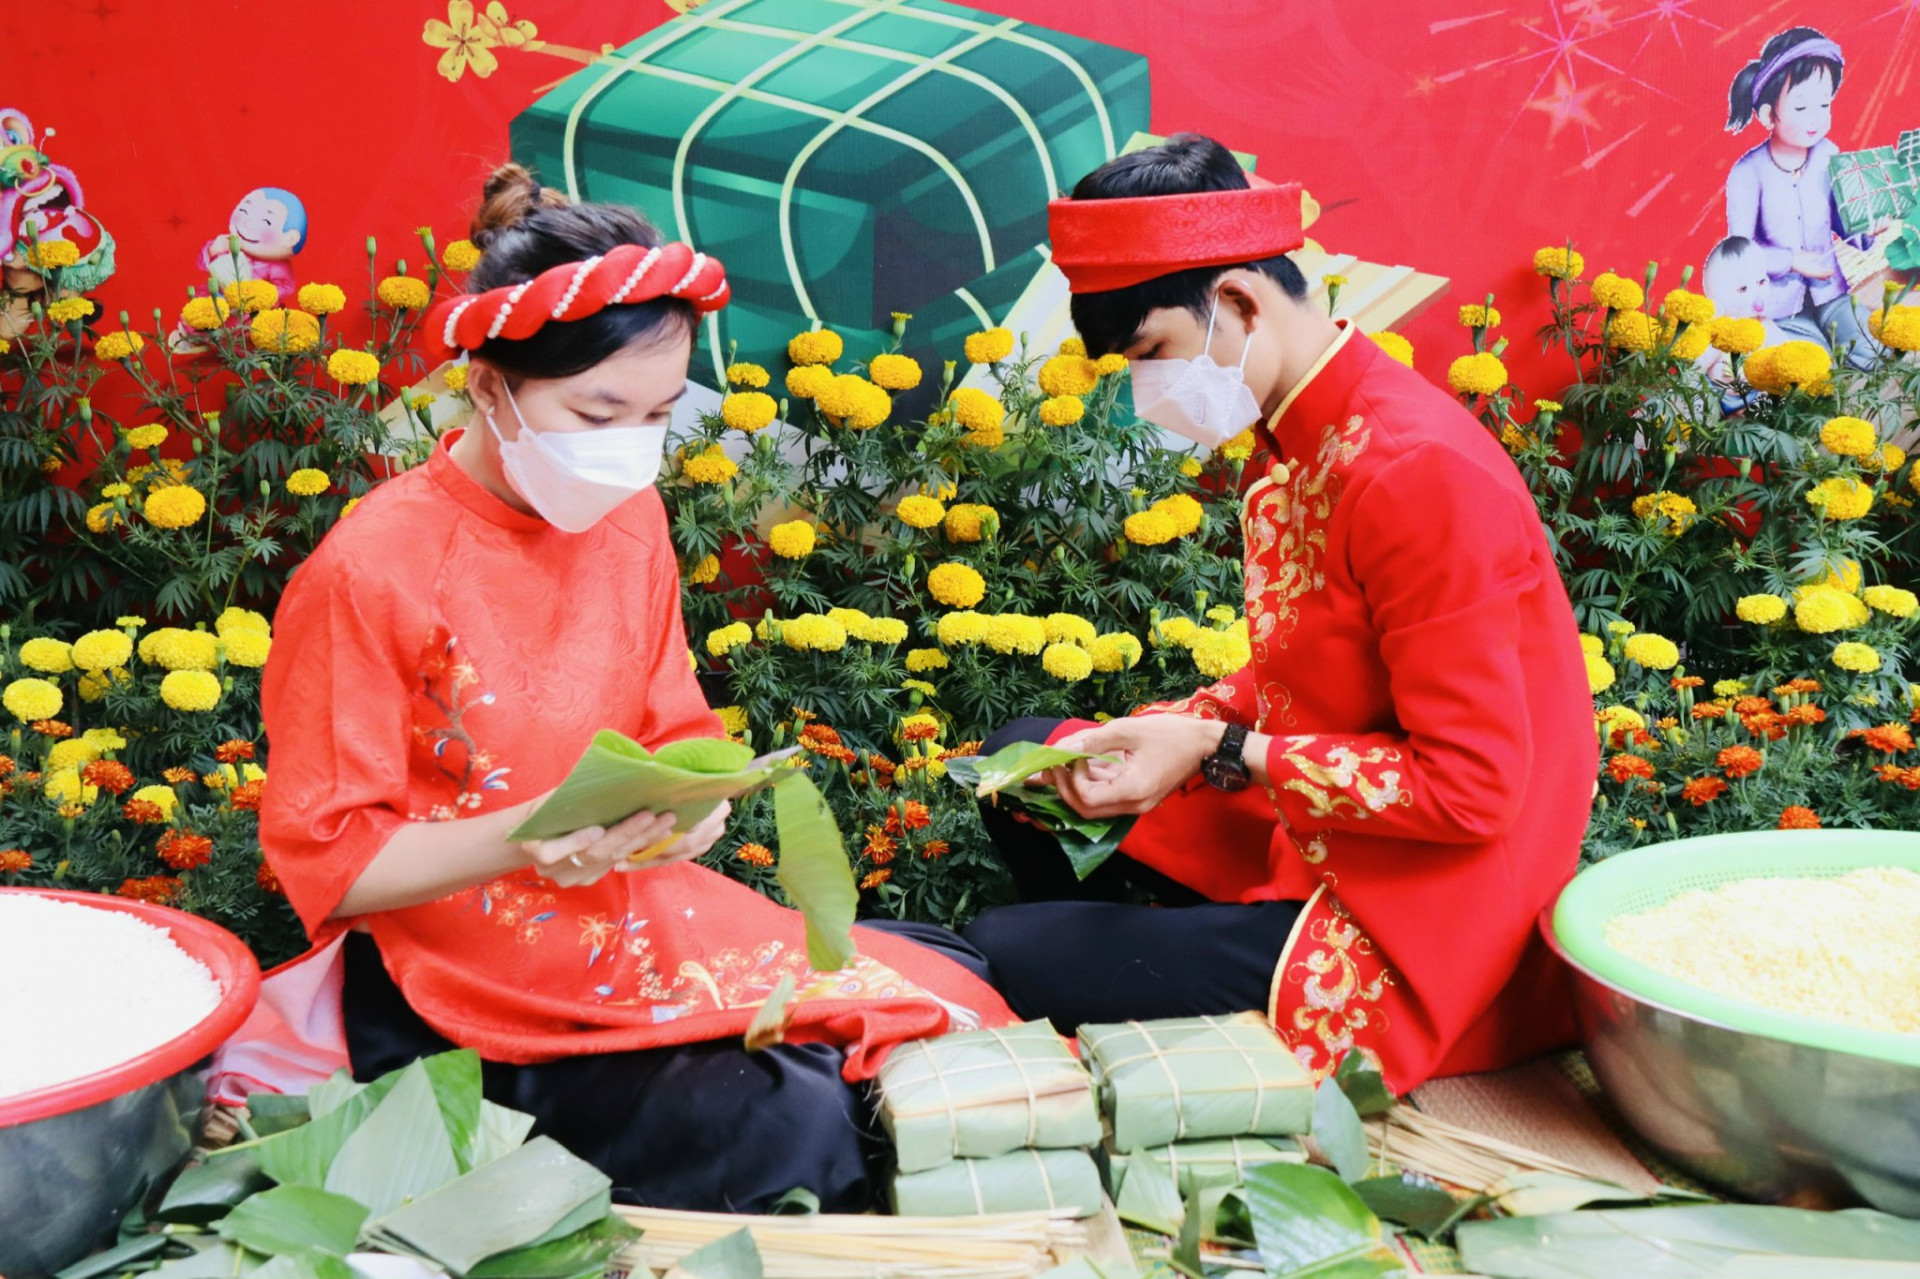 Hình ảnh những bạn trẻ trong trang phục truyền thống  tham gia gói bánh chưng càng tôn thêm nét đẹp văn hóa dân tộc Việt Nam